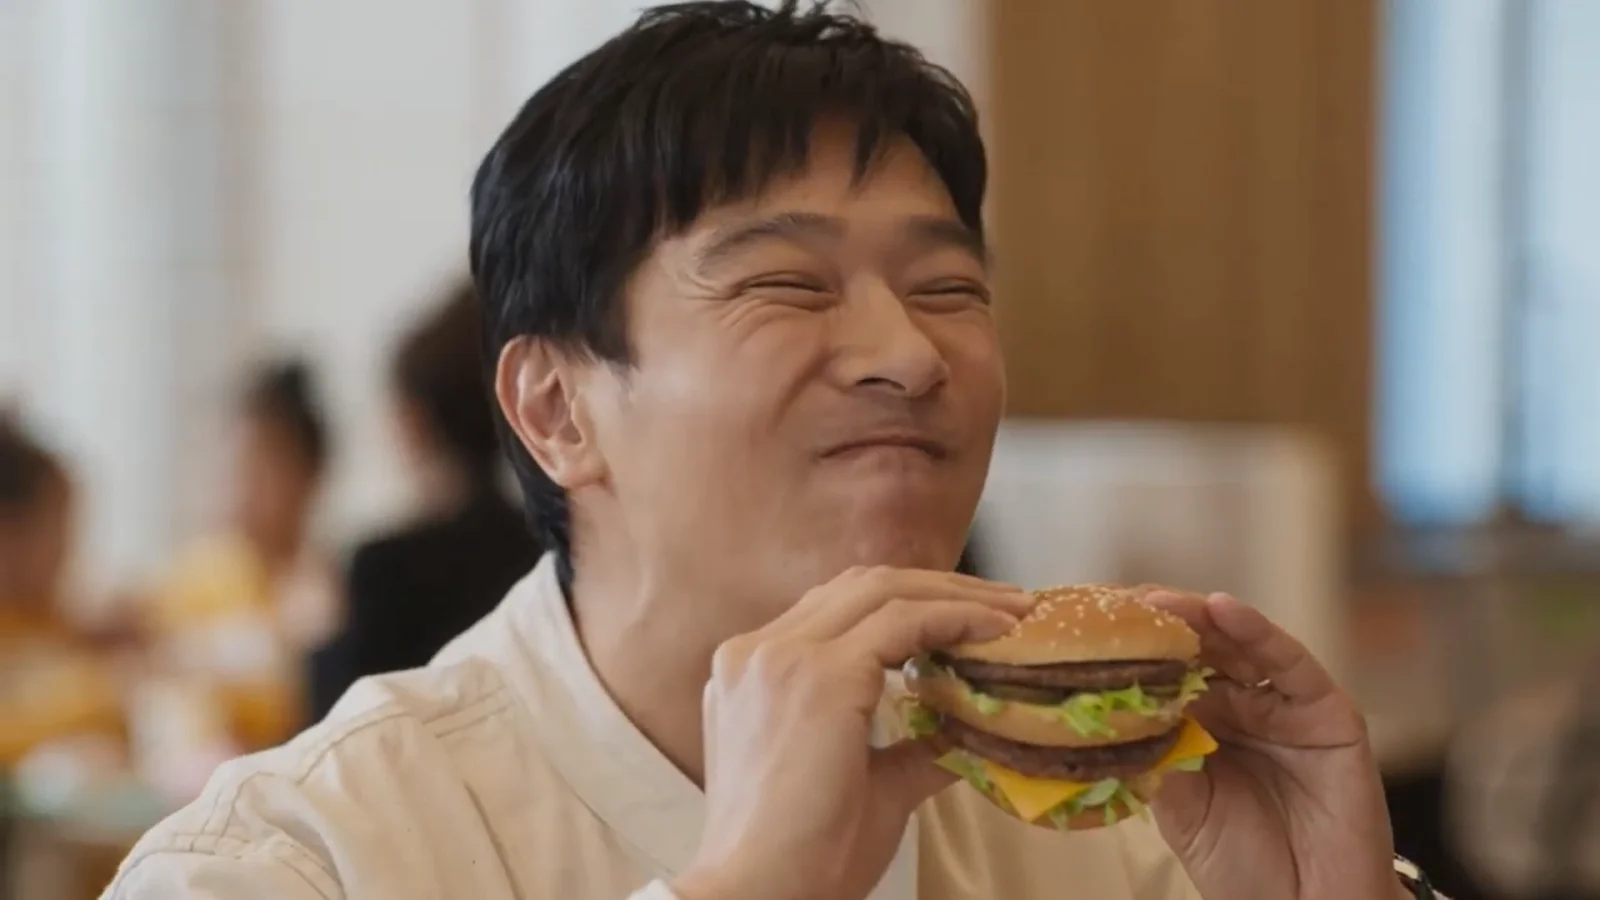 不开心就来个汉堡吧！堺雅人出演麦当劳巨无霸广告